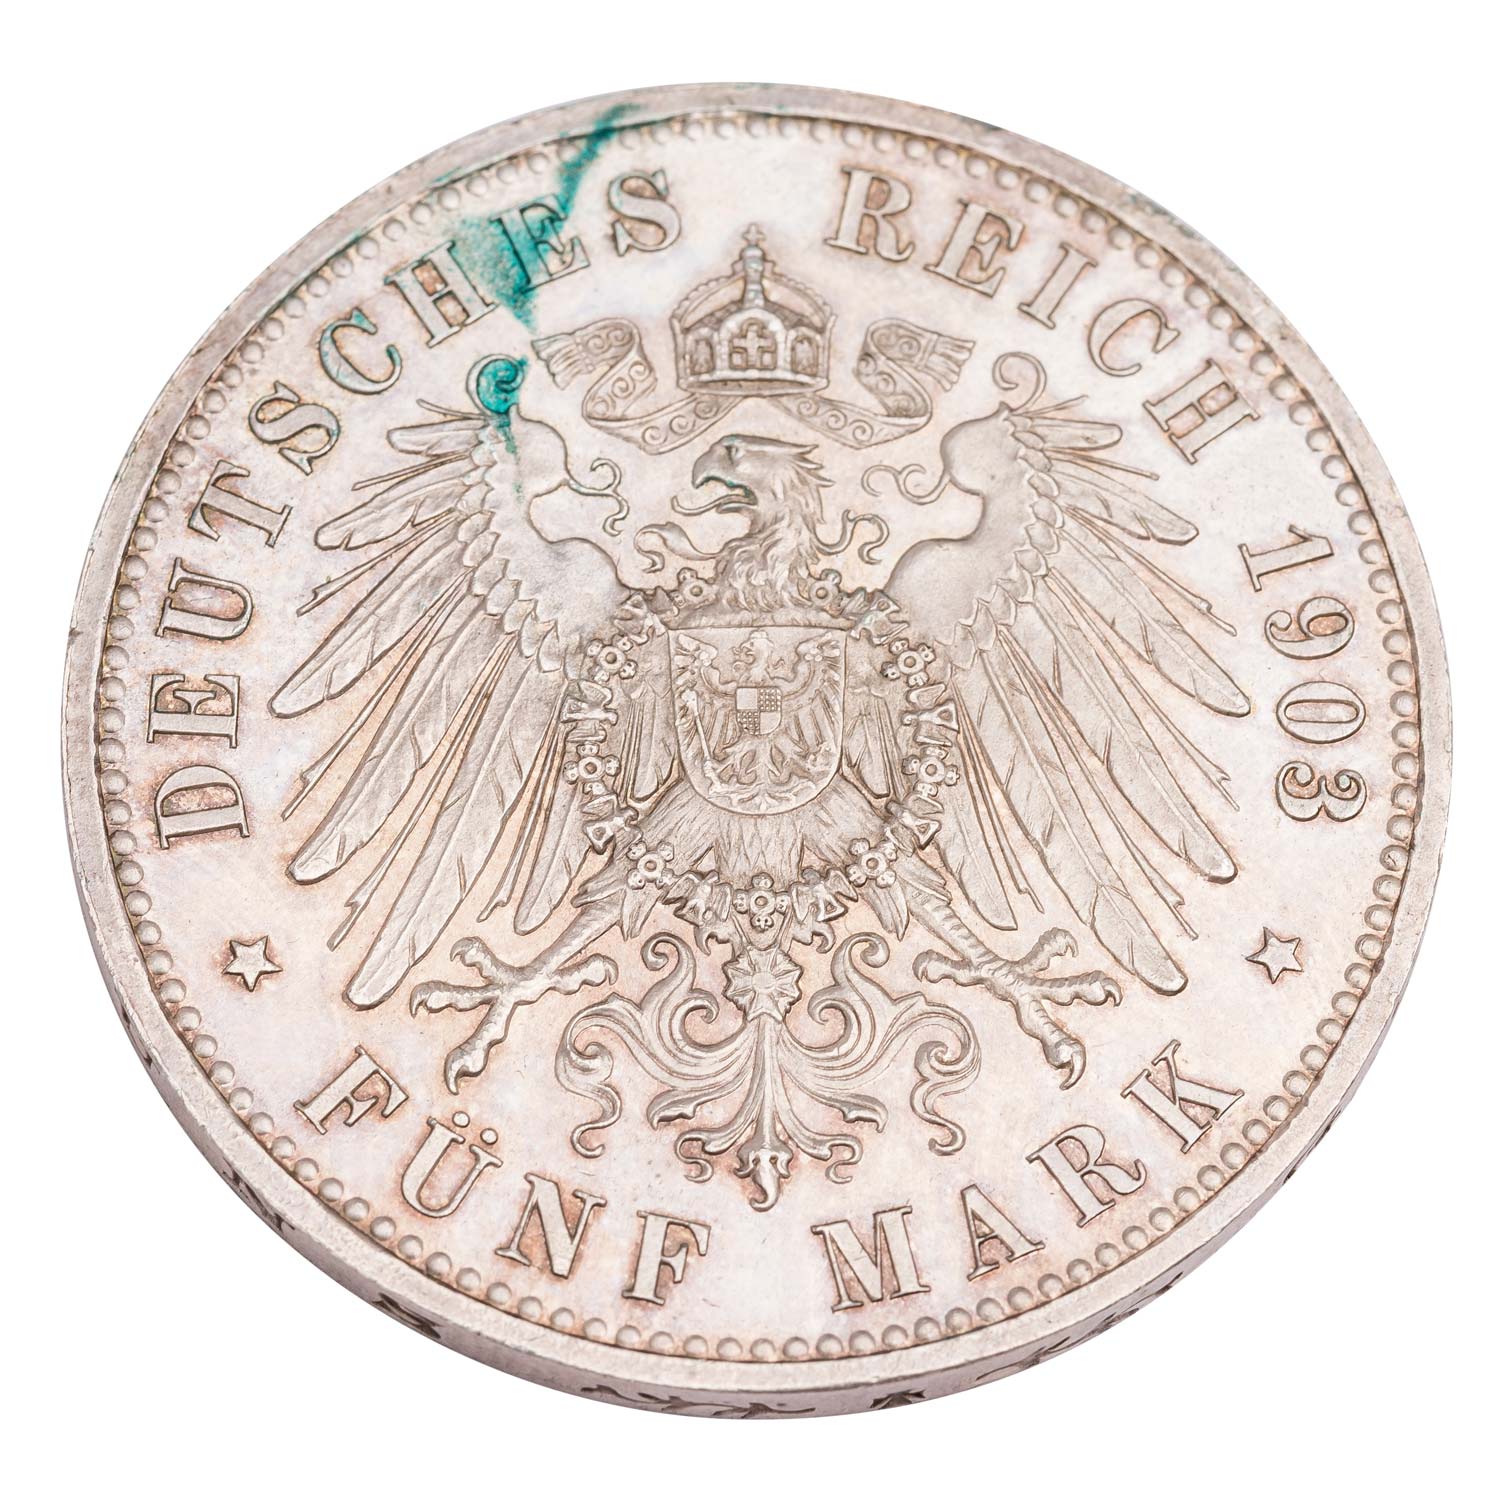 Großherzogtum Sachsen-Weimar-Eisenach - 5 Mark 1903/A, - Image 2 of 2